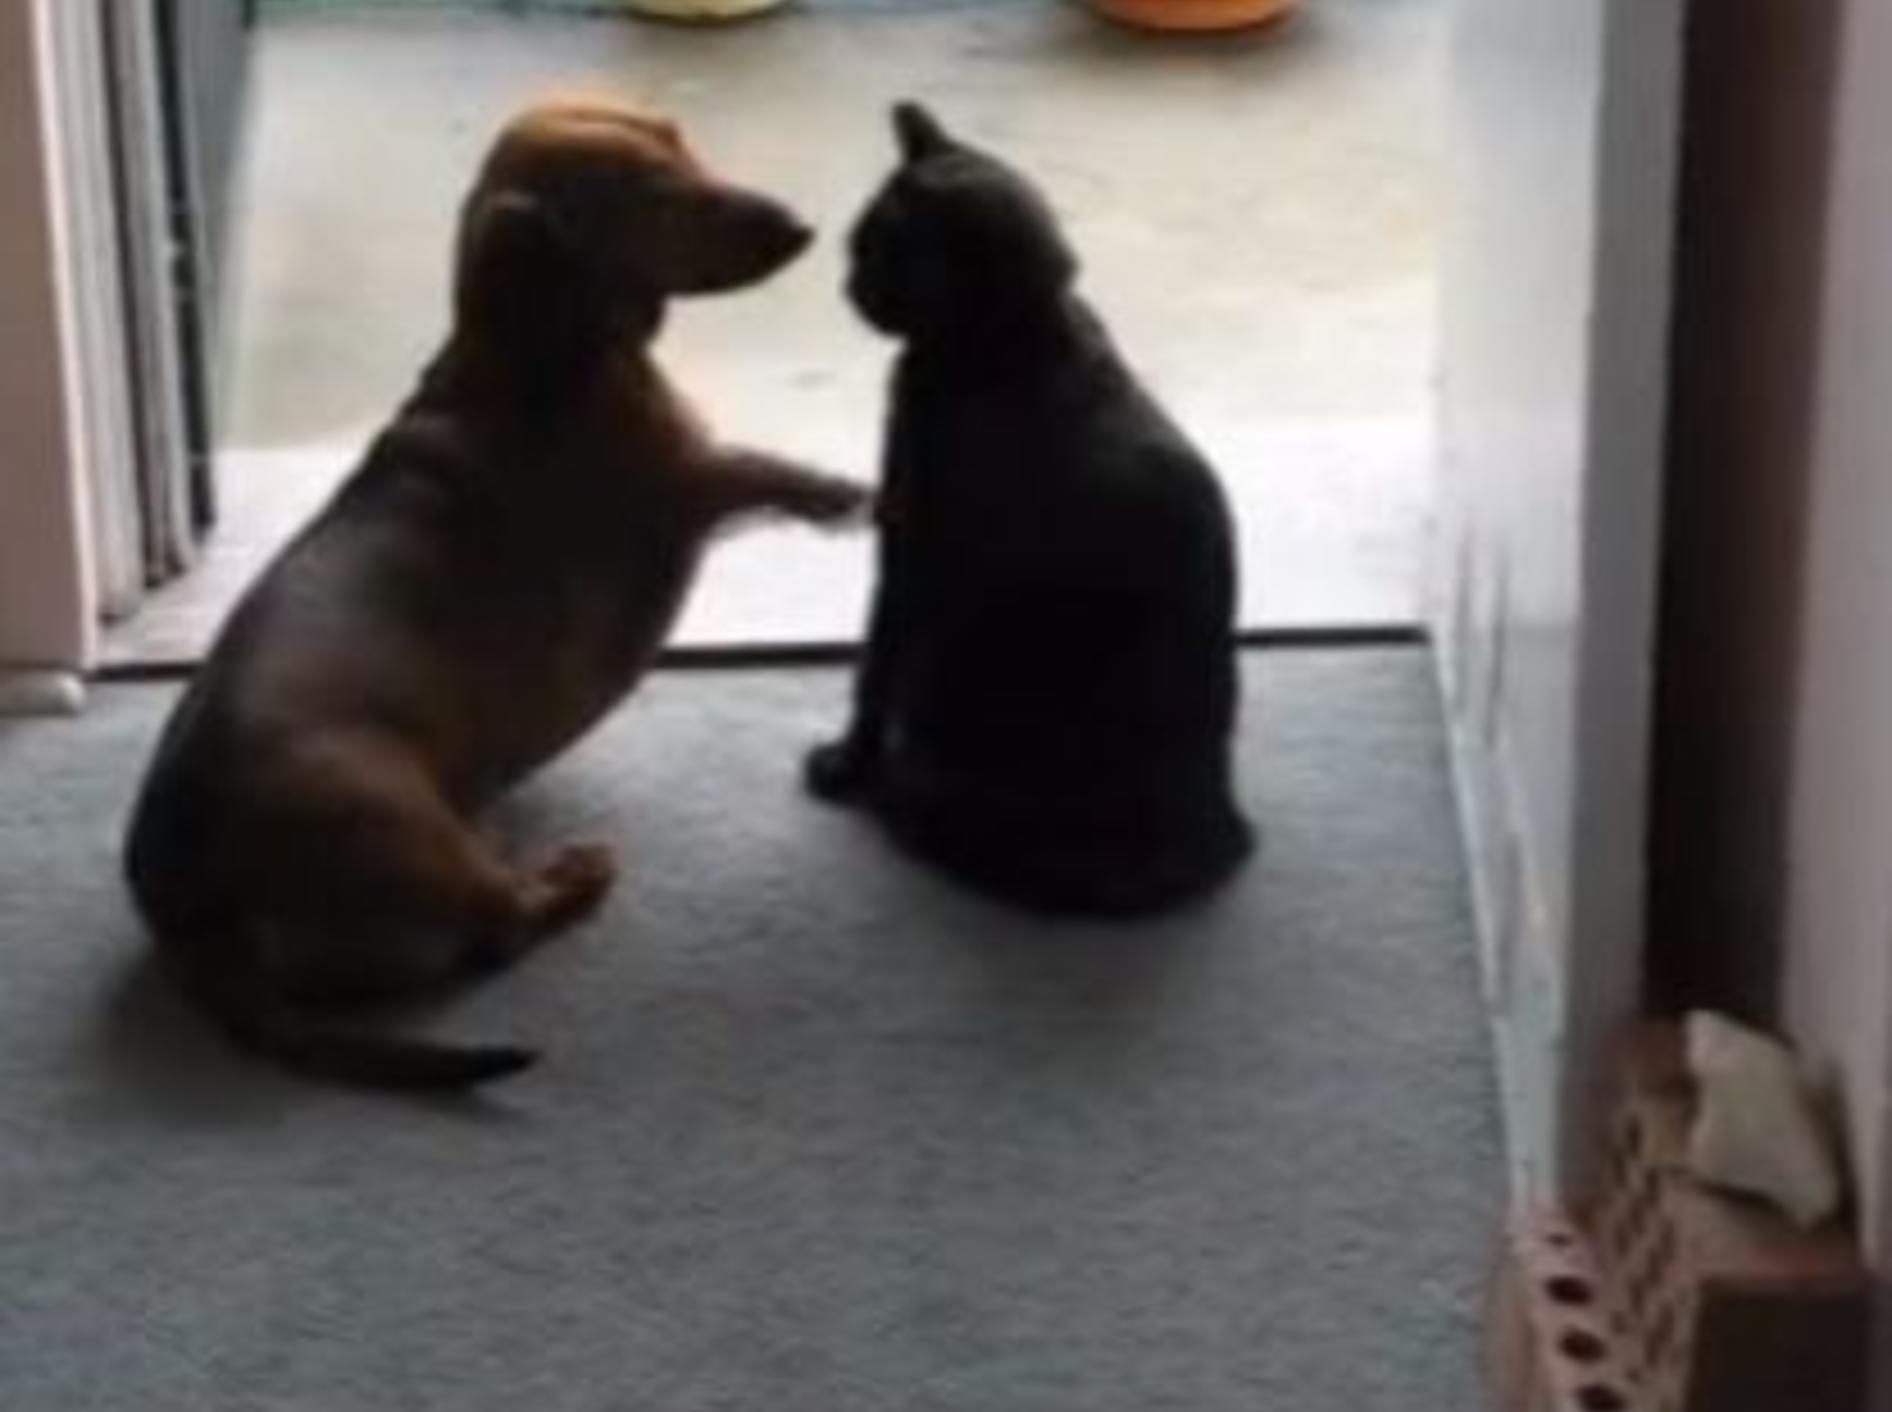 Verspielter Dackel trifft auf strenge Katze: Nein heißt Nein! — Bild: Youtube / Iain1957